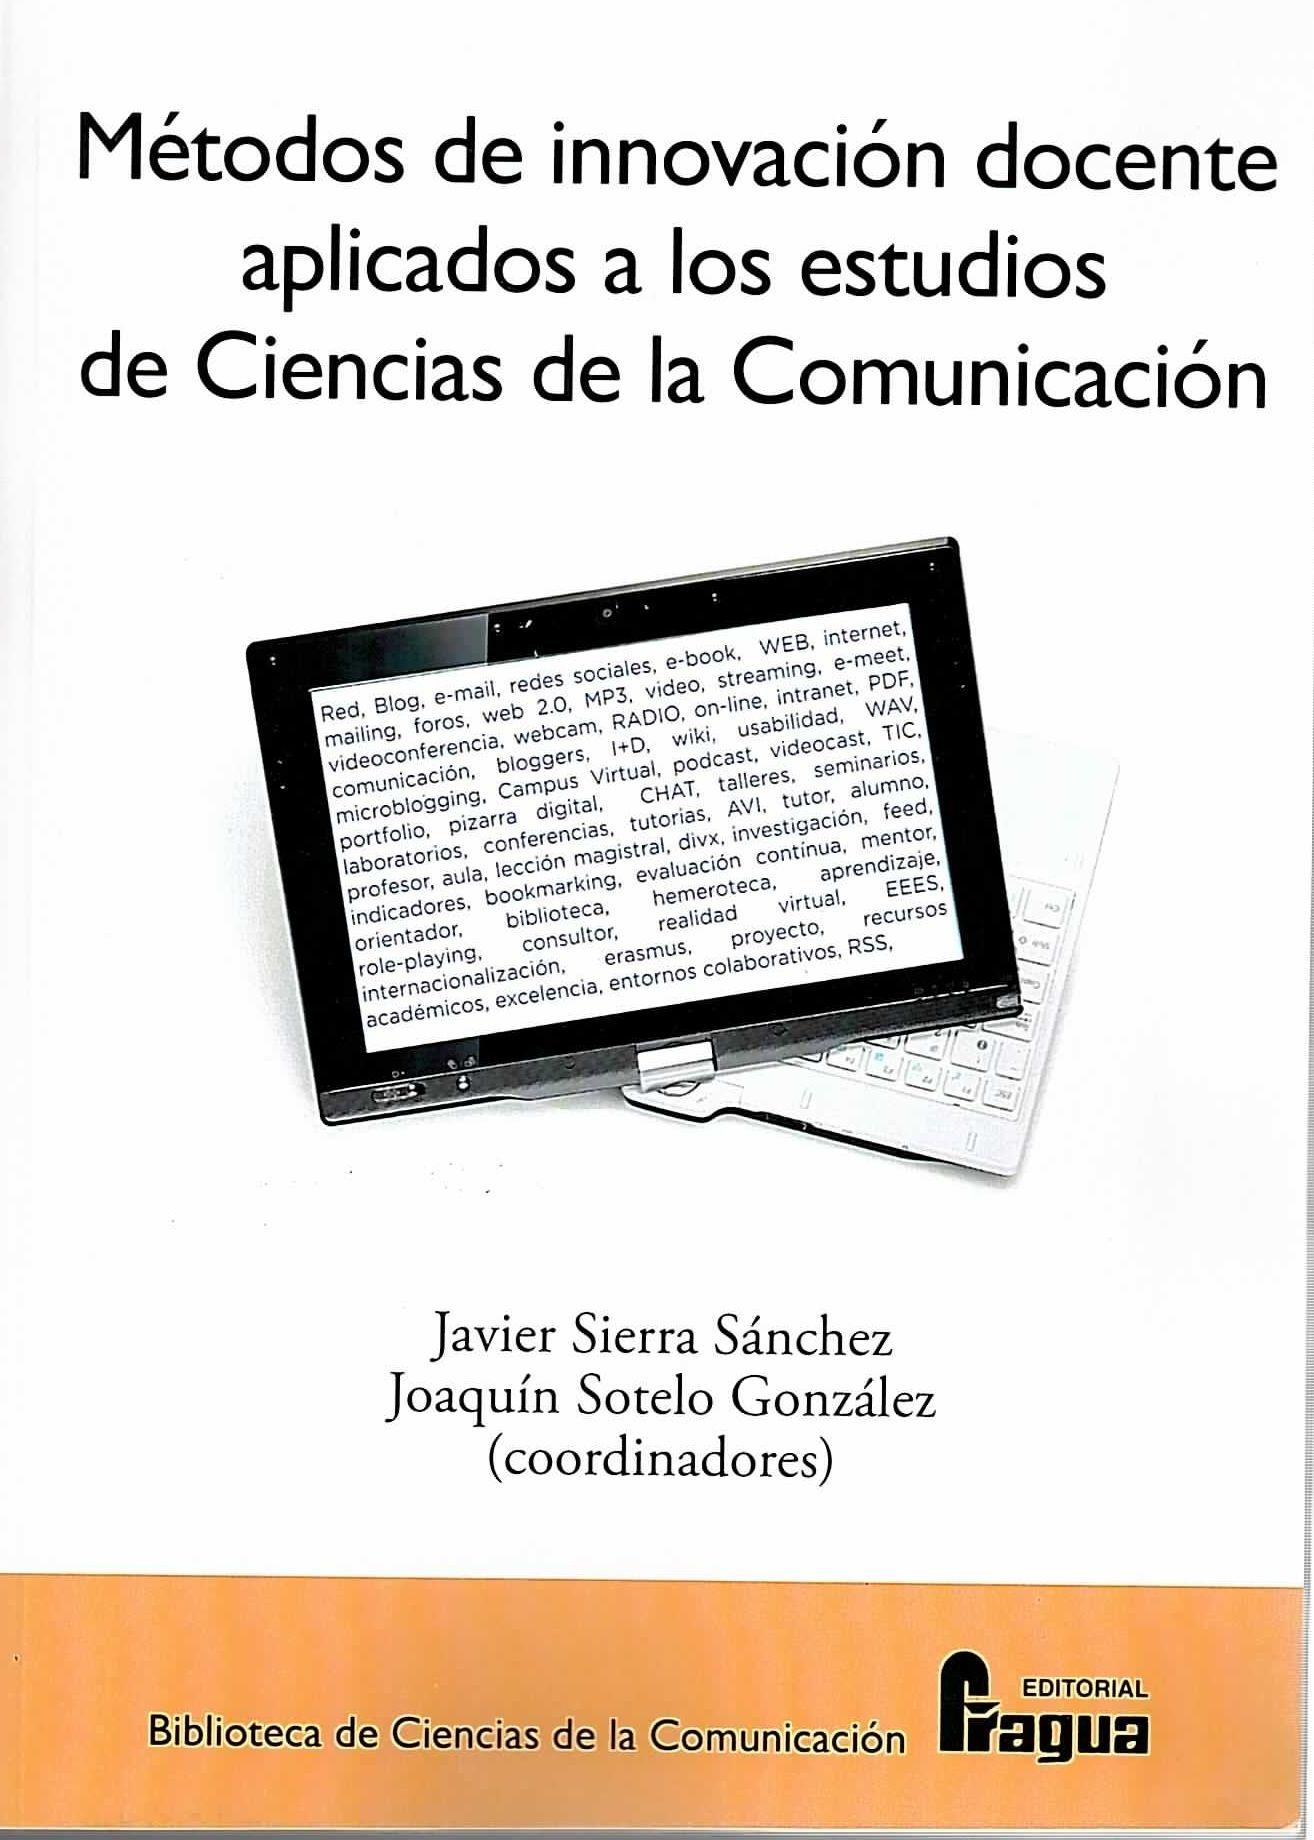 Imagen de portada del libro Métodos de innovación docente aplicados a los estudios de Ciencias de la Comunicación